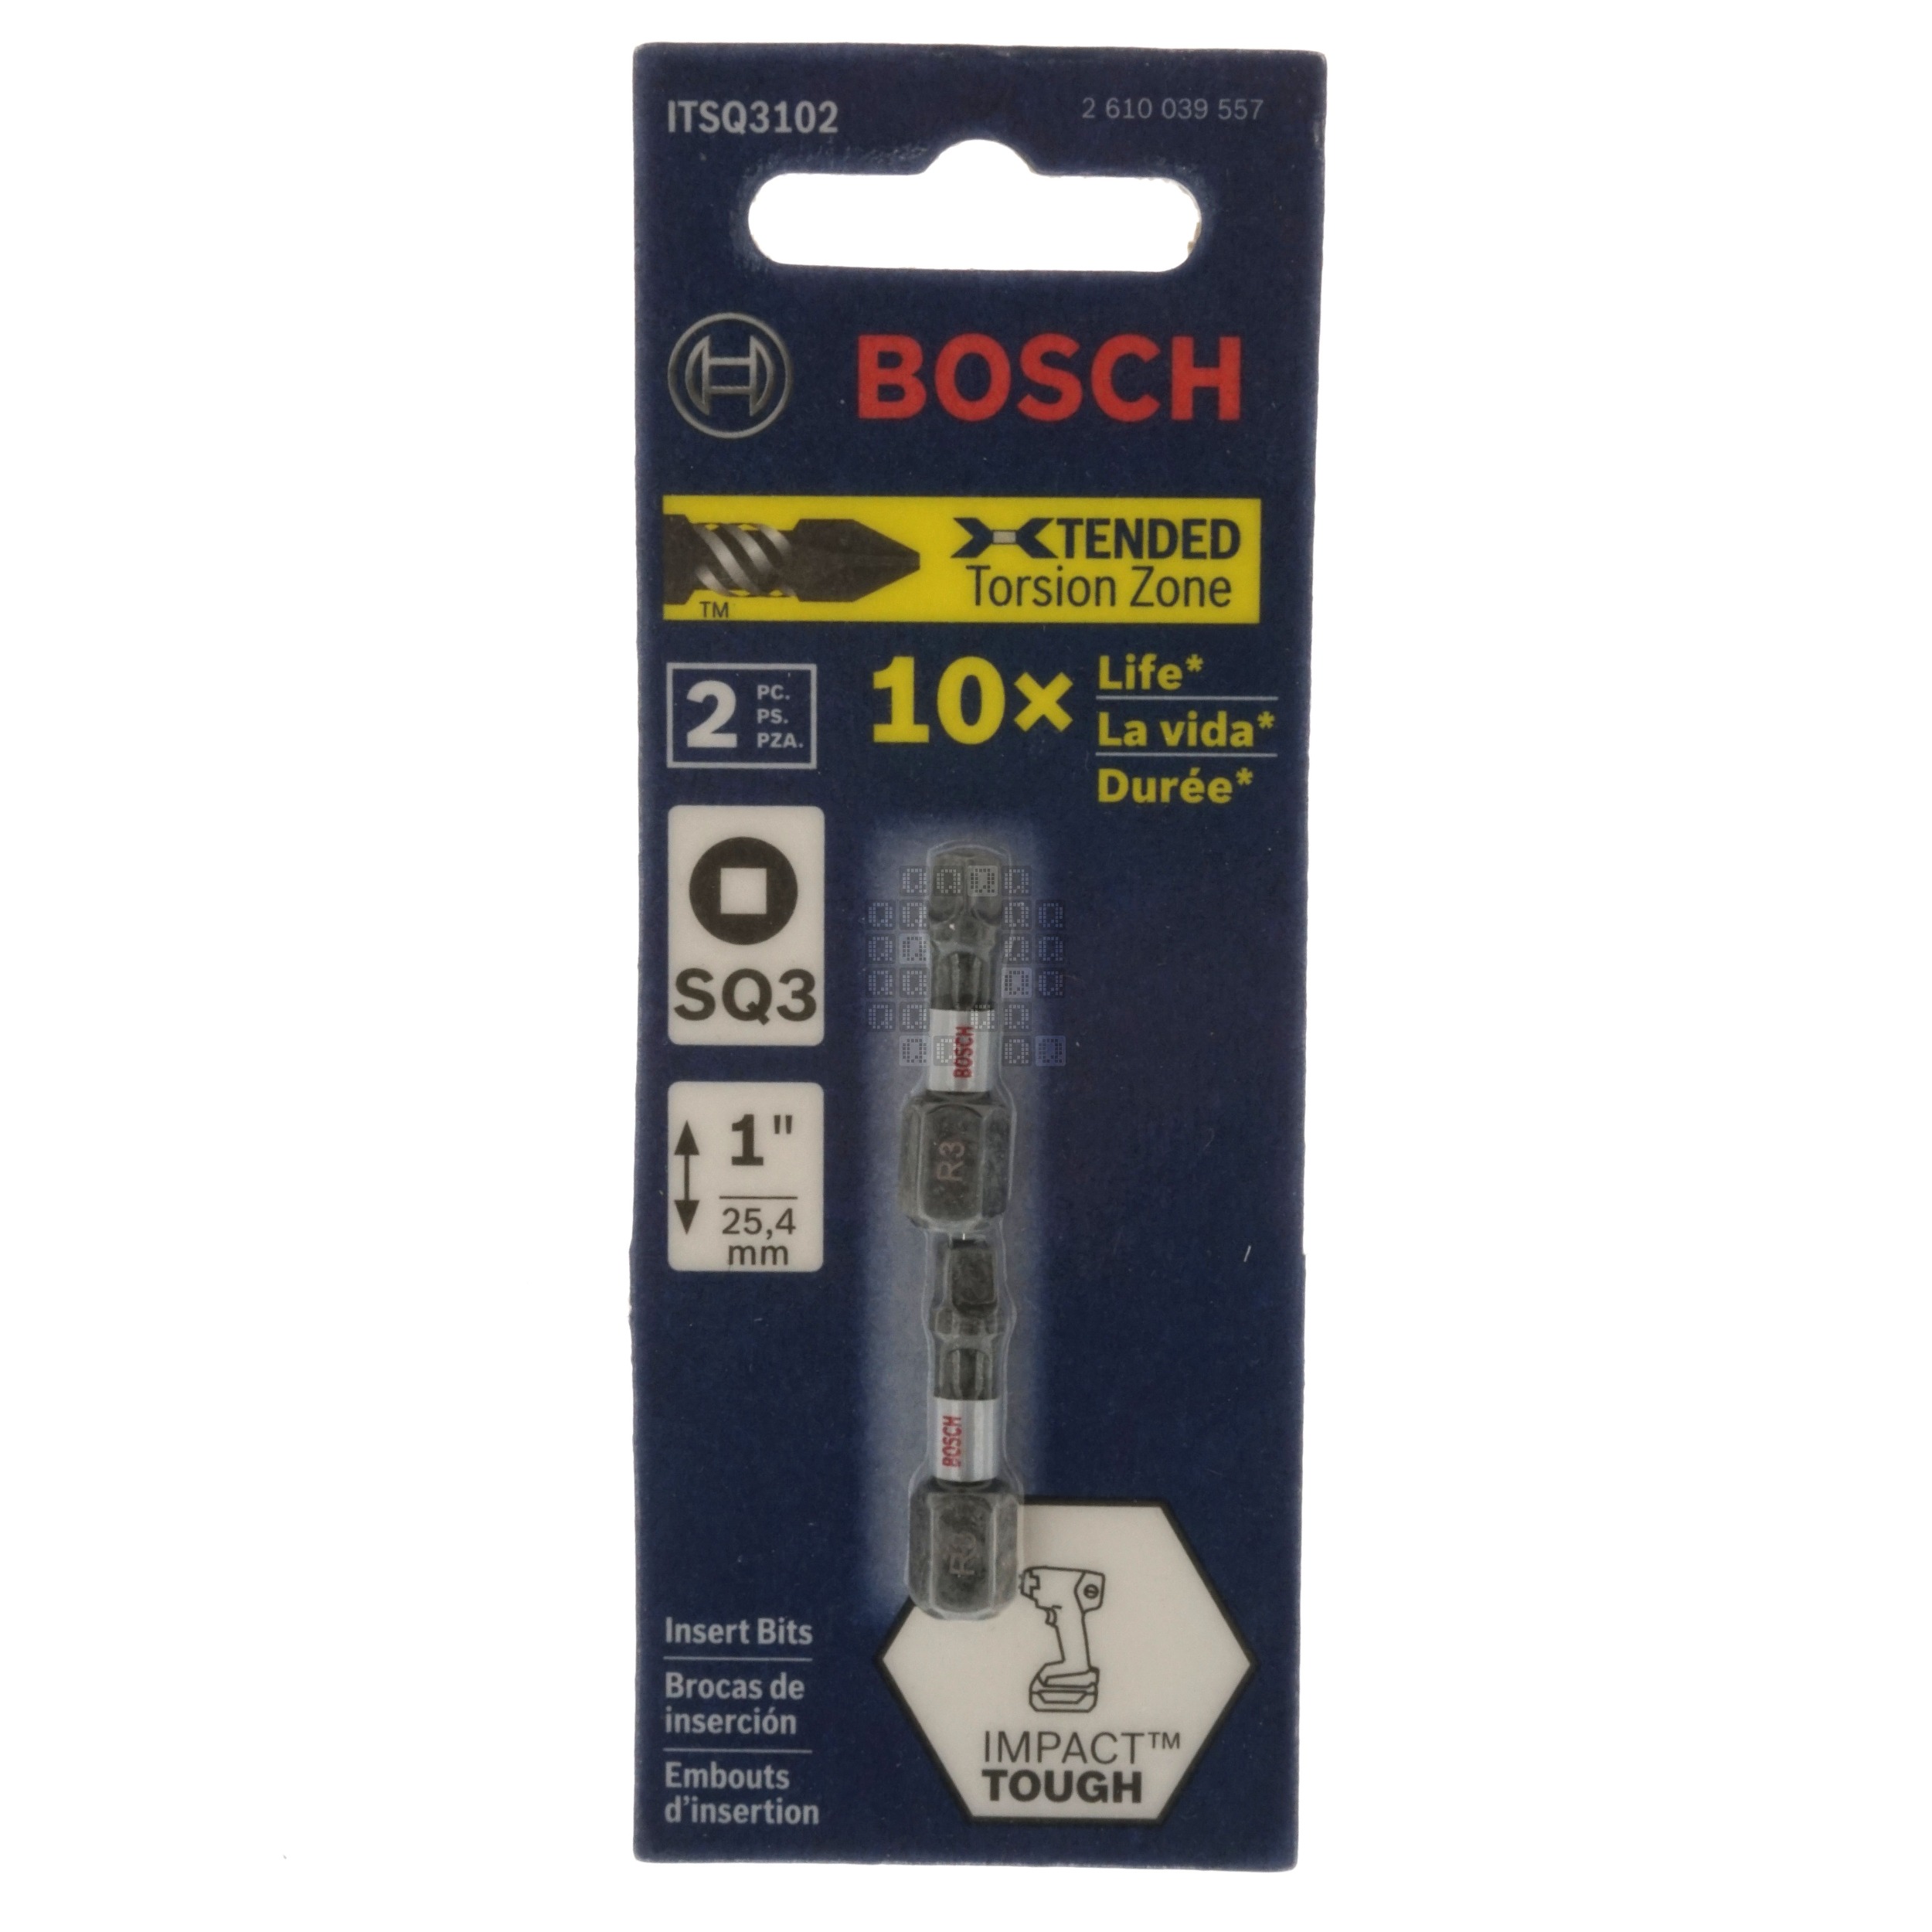 Bosch ITSQ3102 Impact Tough SQ3 #3 Square Insert Bits, 1" Length, 2-Pack, 2610039557